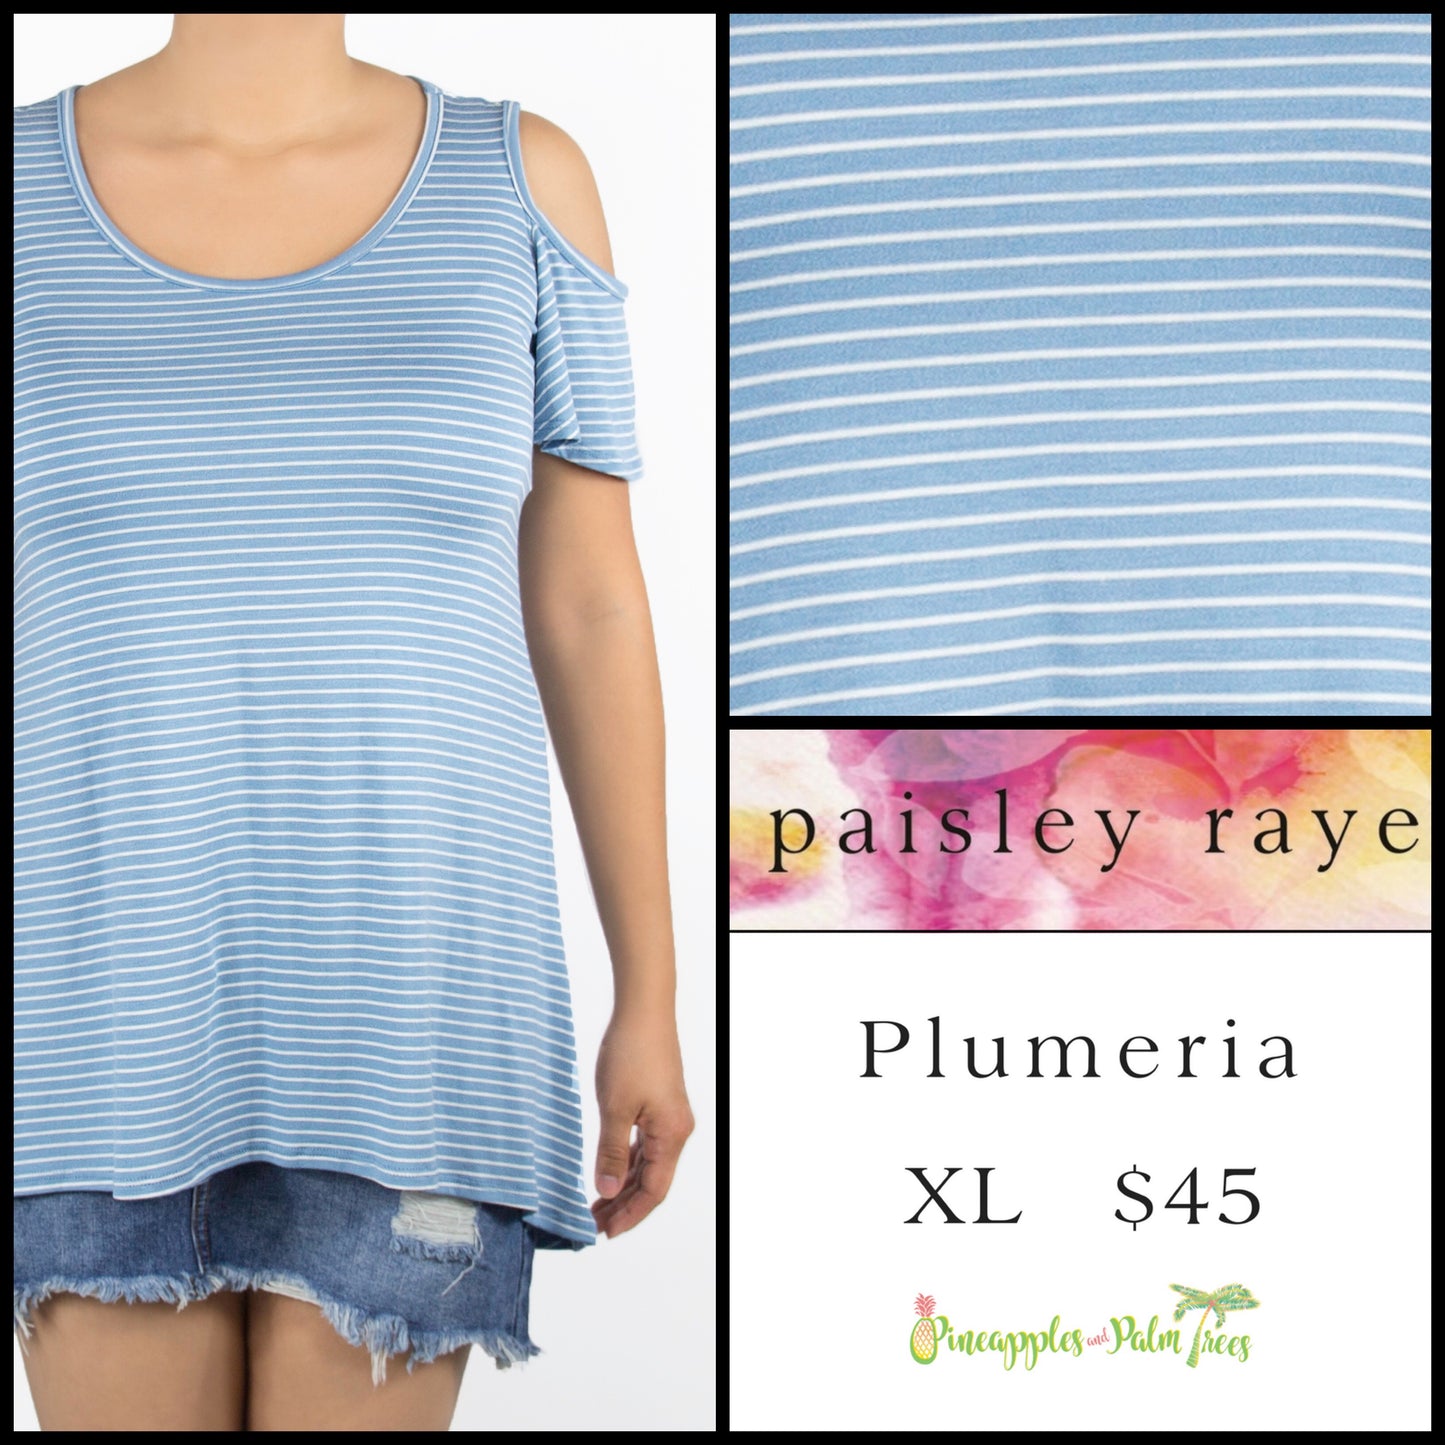 Top: Plumeria XL - blue stripes